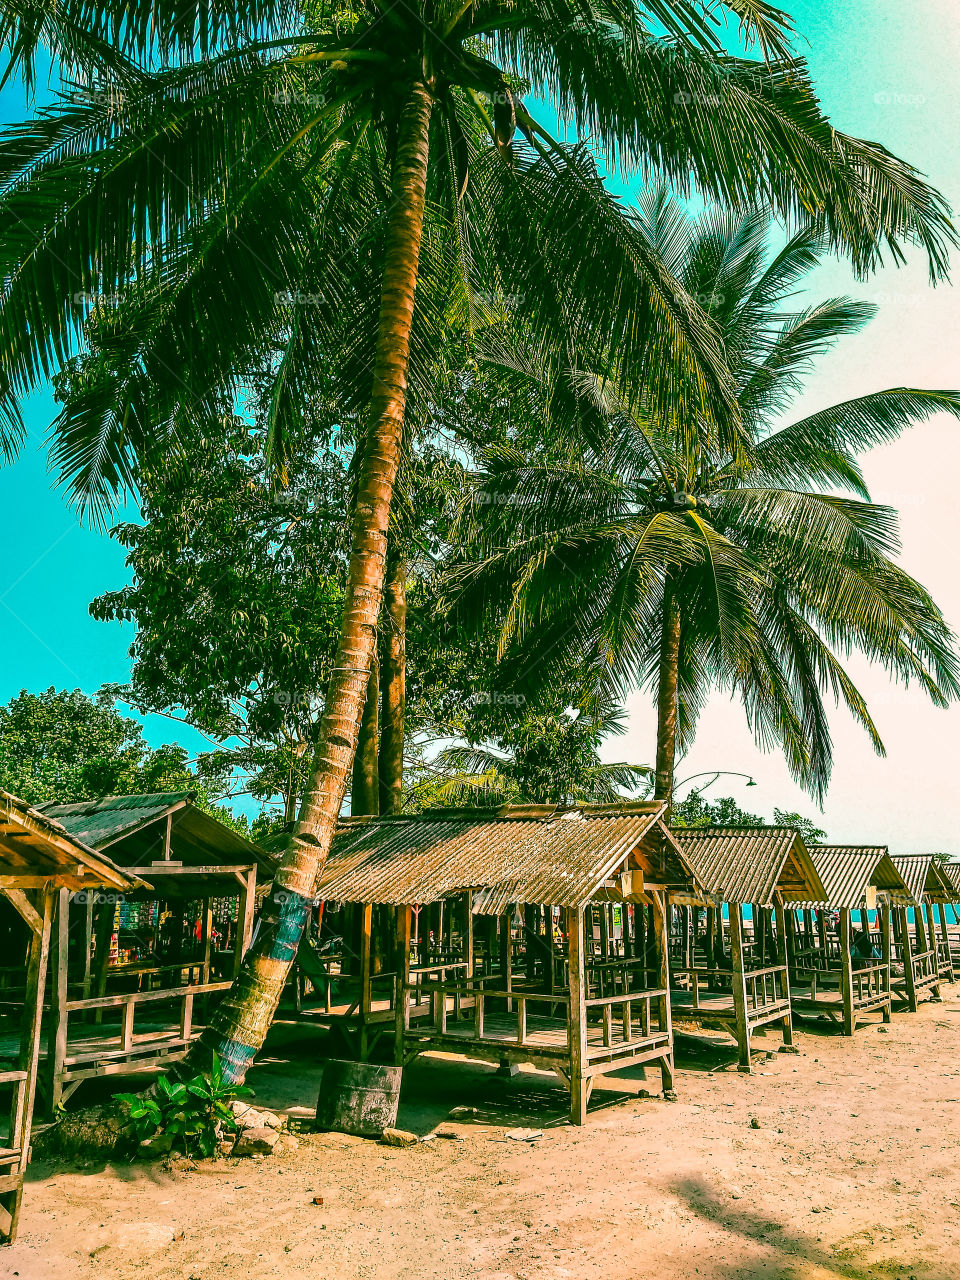 beachside coconut trees